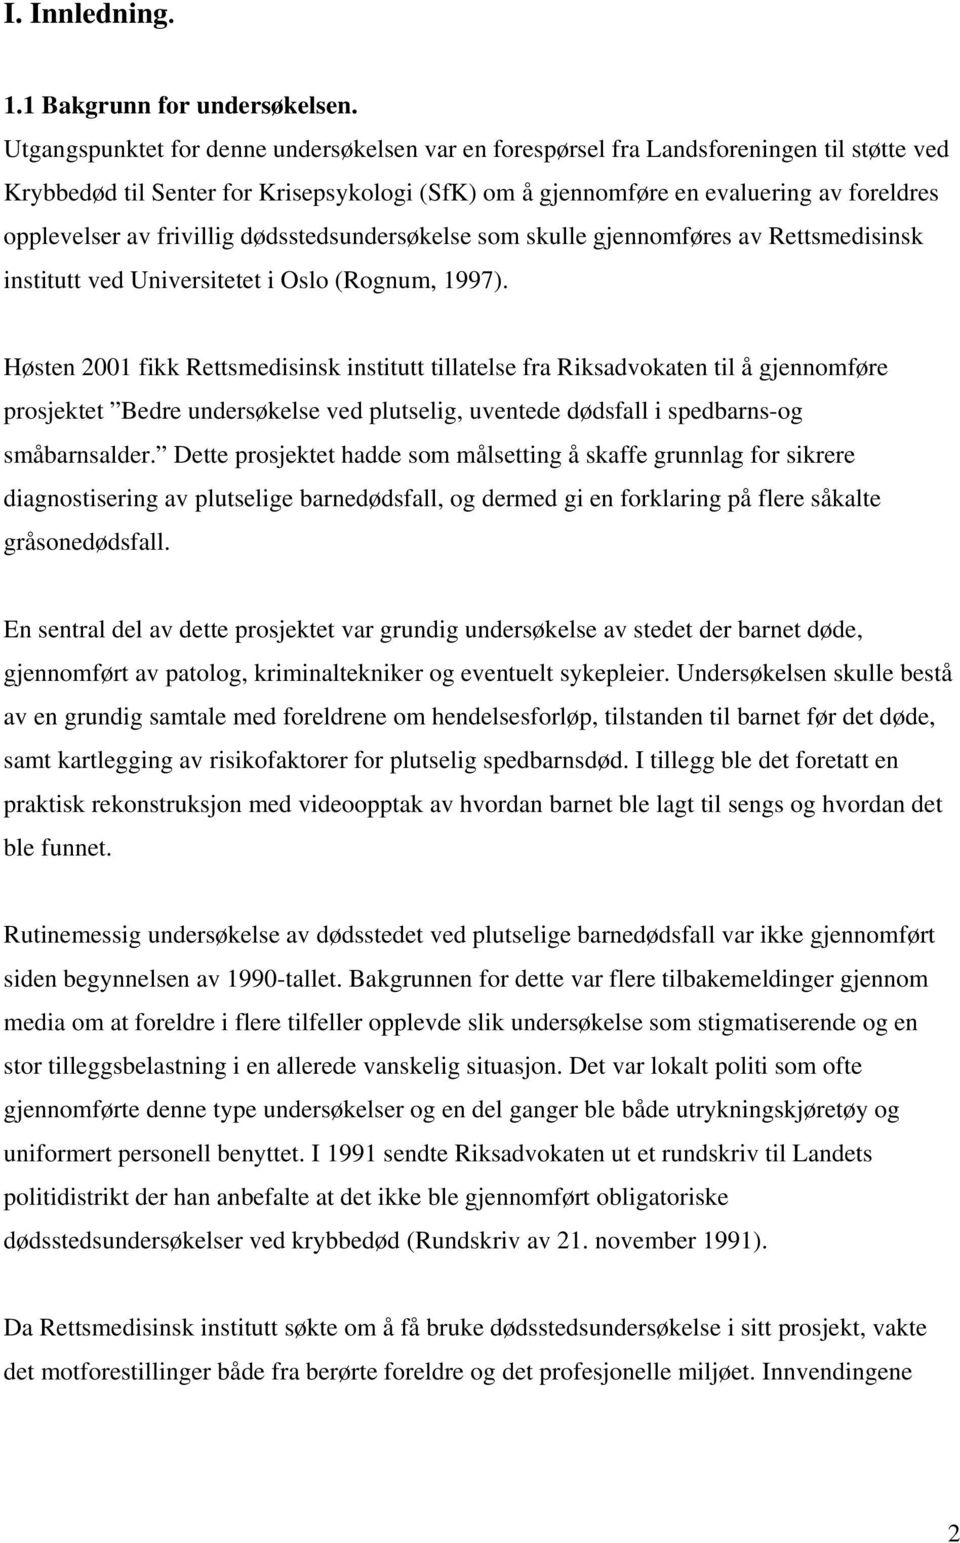 frivillig dødsstedsundersøkelse som skulle gjennomføres av Rettsmedisinsk institutt ved Universitetet i Oslo (Rognum, 1997).